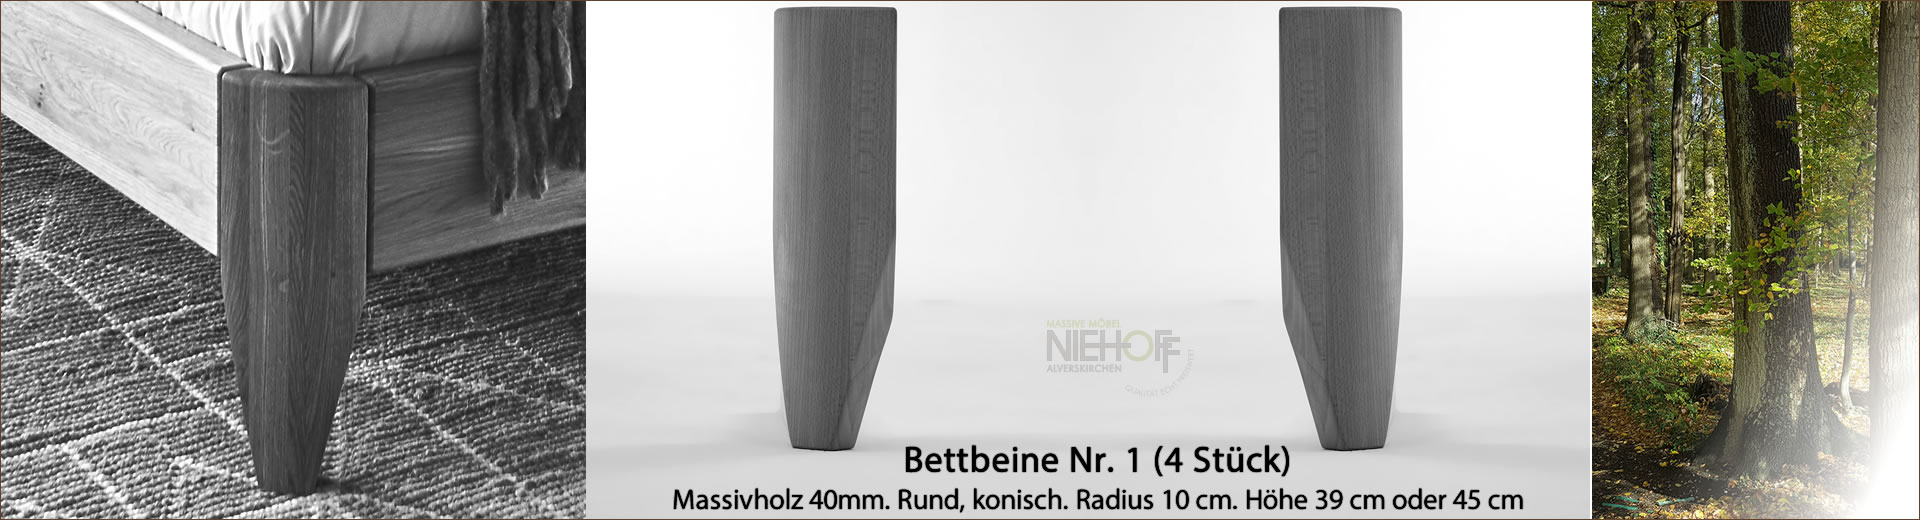 Bettbeine Nr. 1, Massivholz 40 mm rund, konisch, Radius 10 cm, Höhe 39 cm oder 45 cm